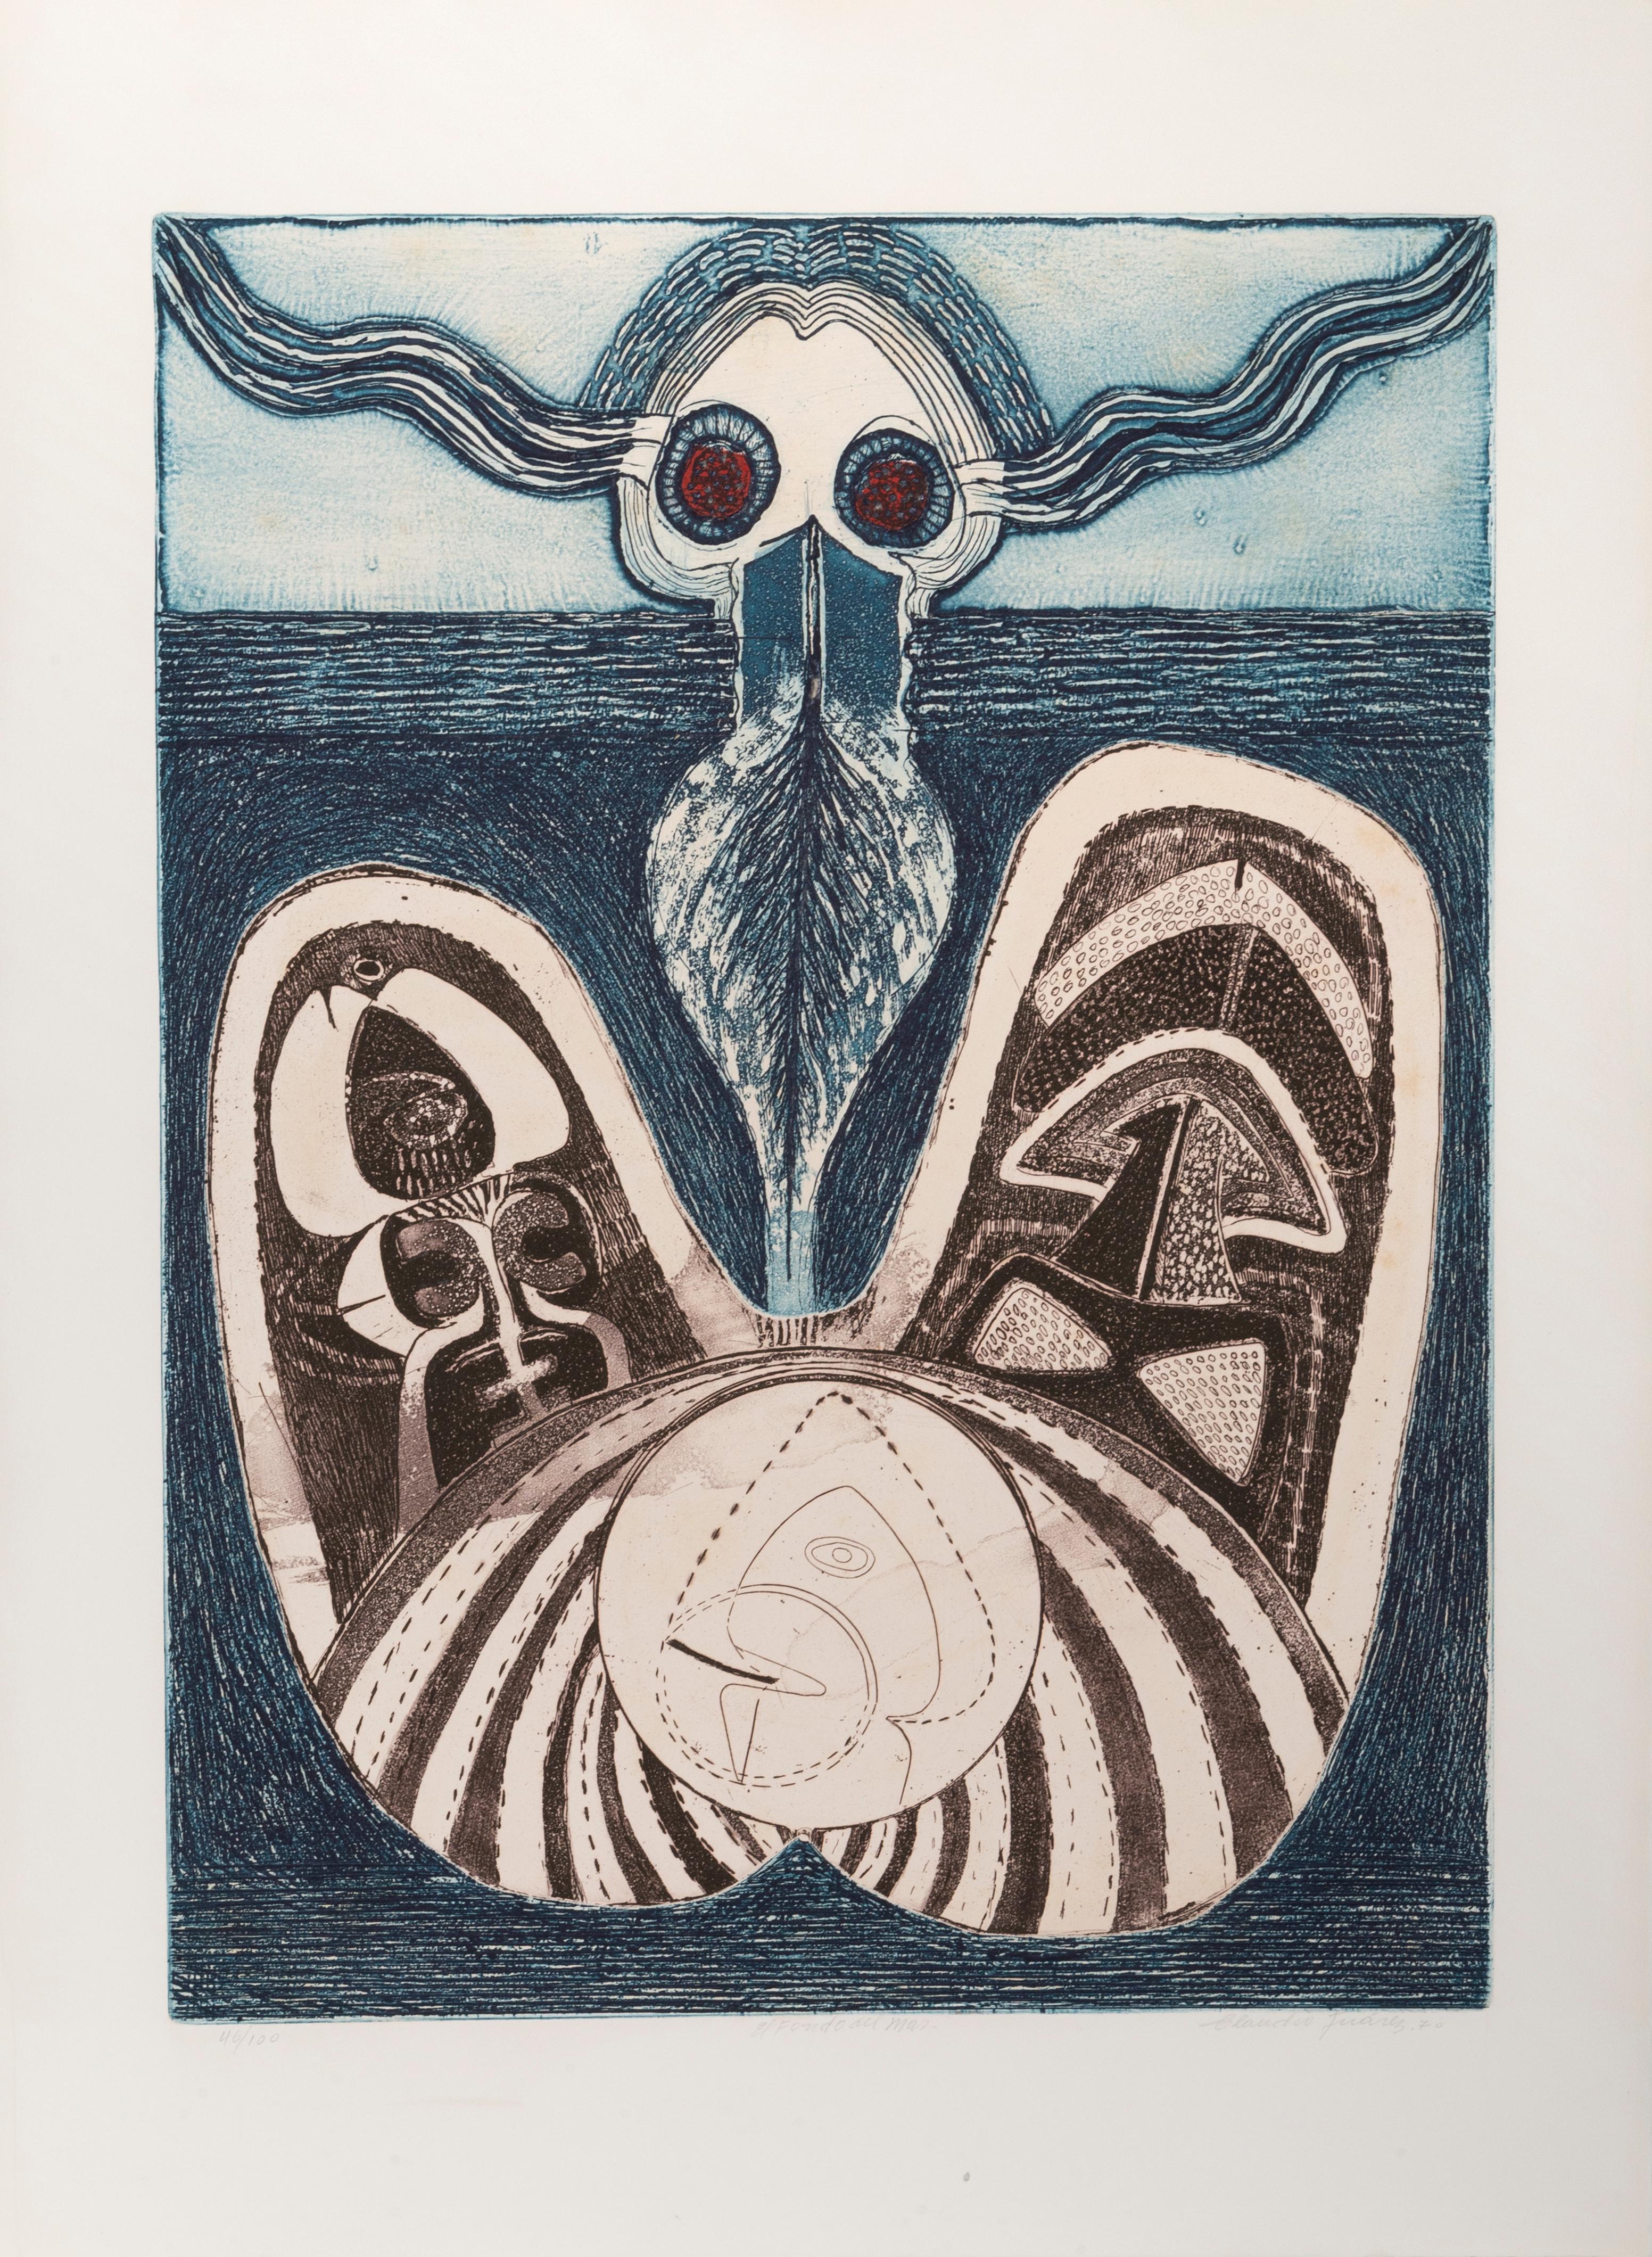 El Fondo del Mar, Aquatint Etching by Claudio Juarez, 1970